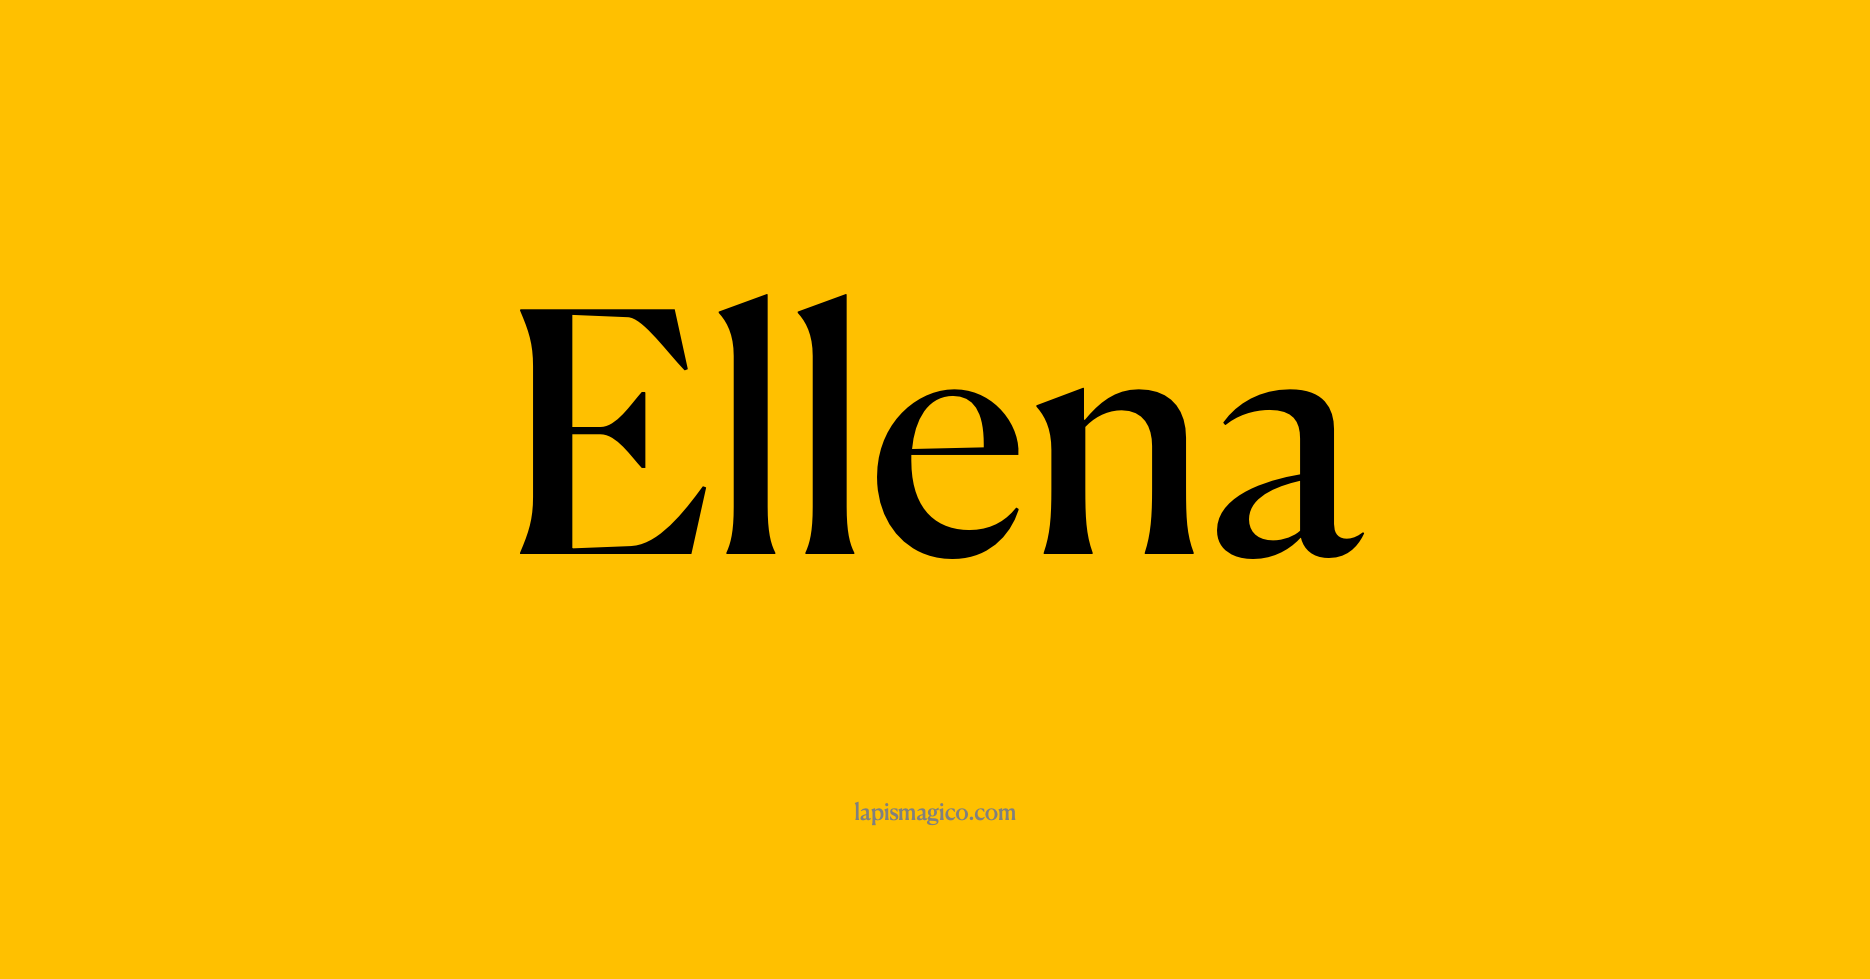 Nome Ellena